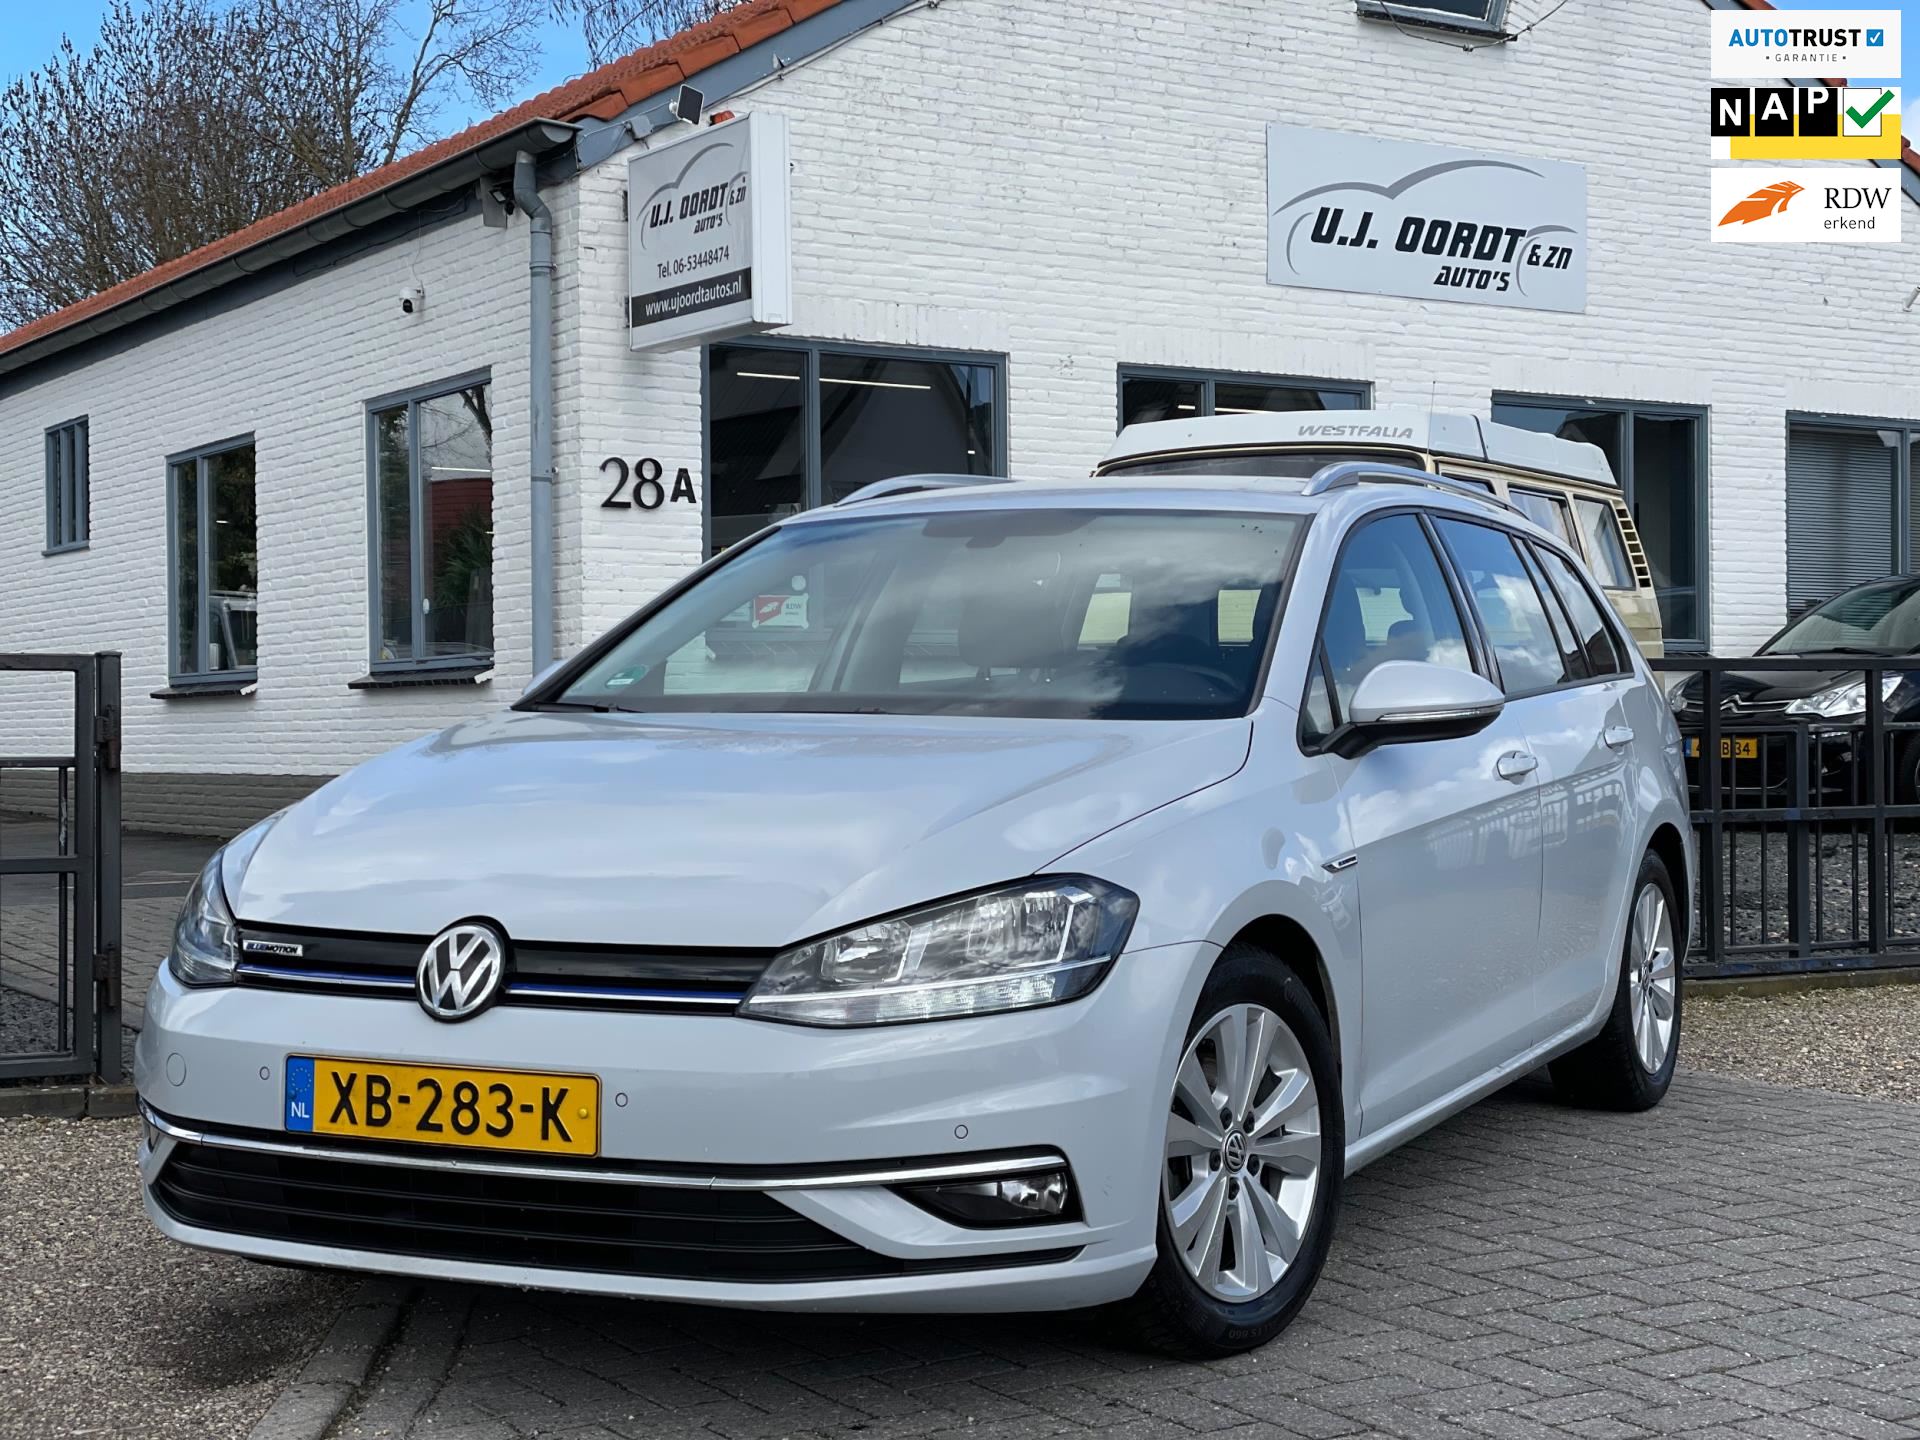 Gespecificeerd op vakantie Accor Volkswagen Golf Variant - 1.5 TSI Comfortline Business  Applecar,Massage,Led, Nieuw! Benzine uit 2018 - www.ujoordtautos.nl